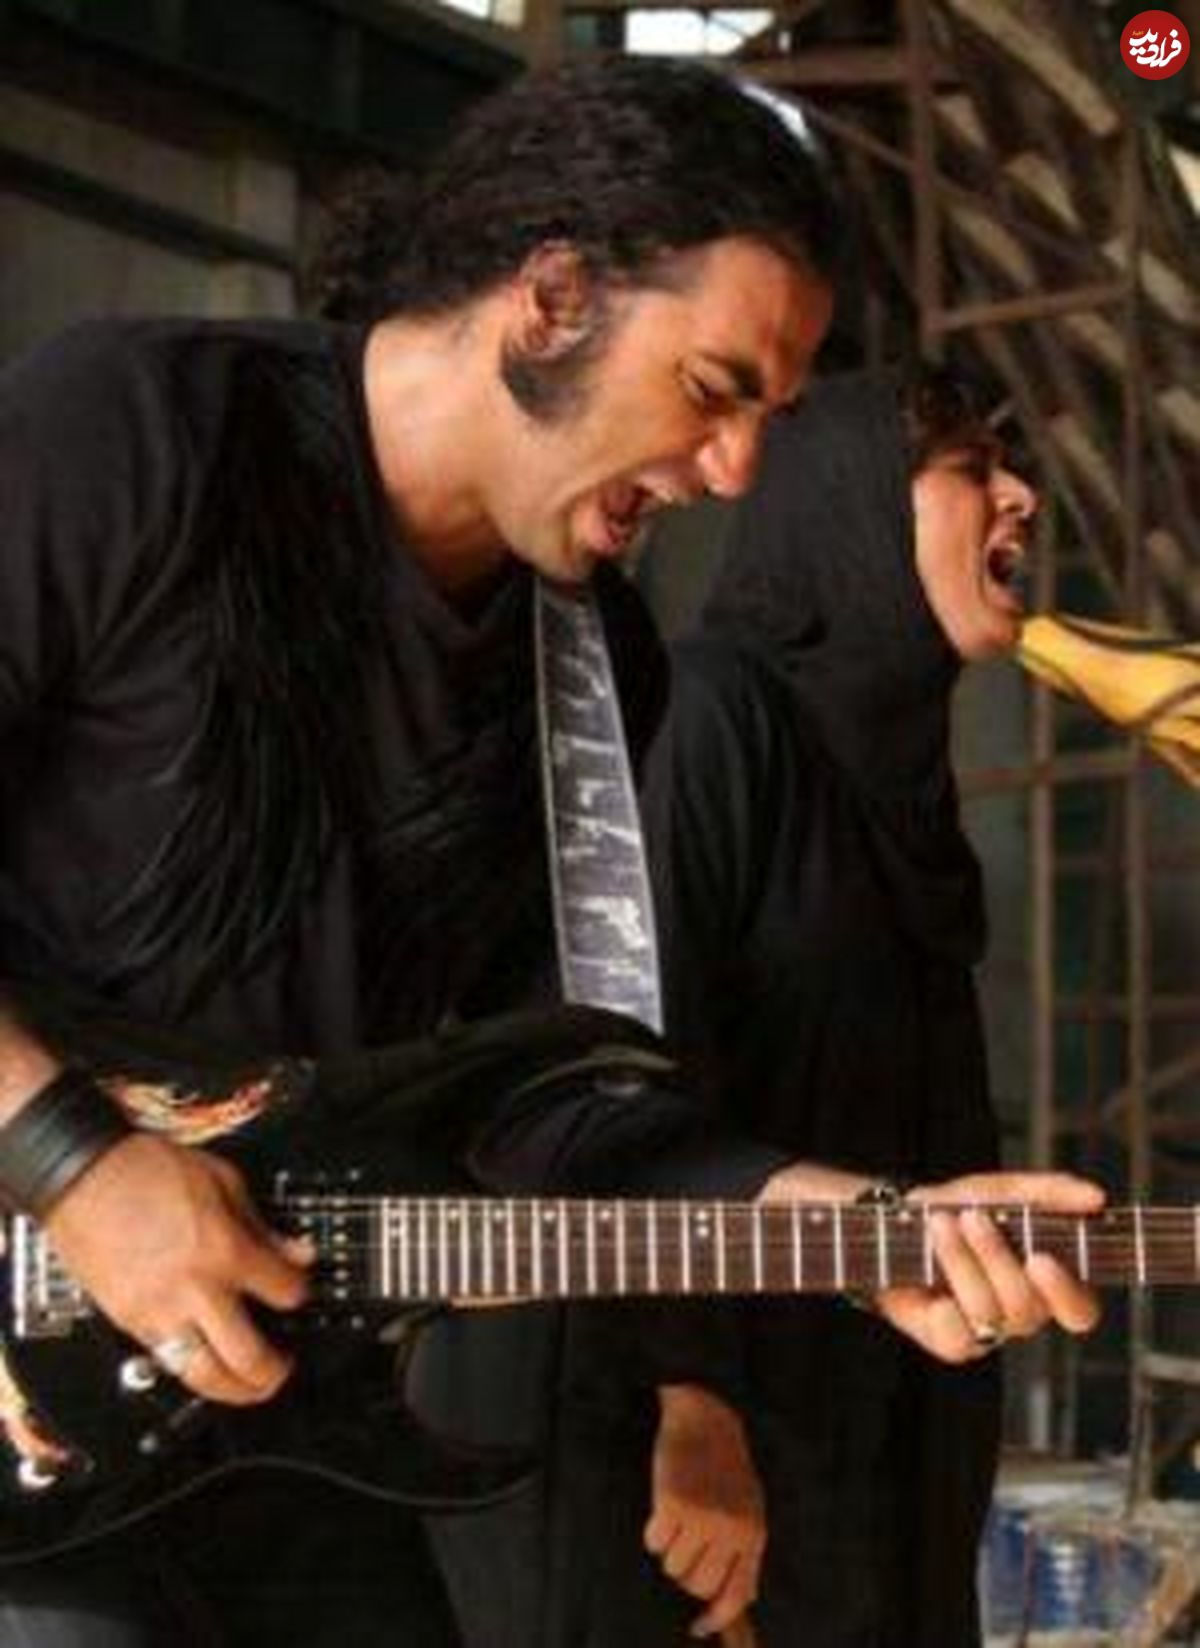 رضا یزدانی: تلفیق موسیقی بوشهری و راک خیلی جذاب شده است